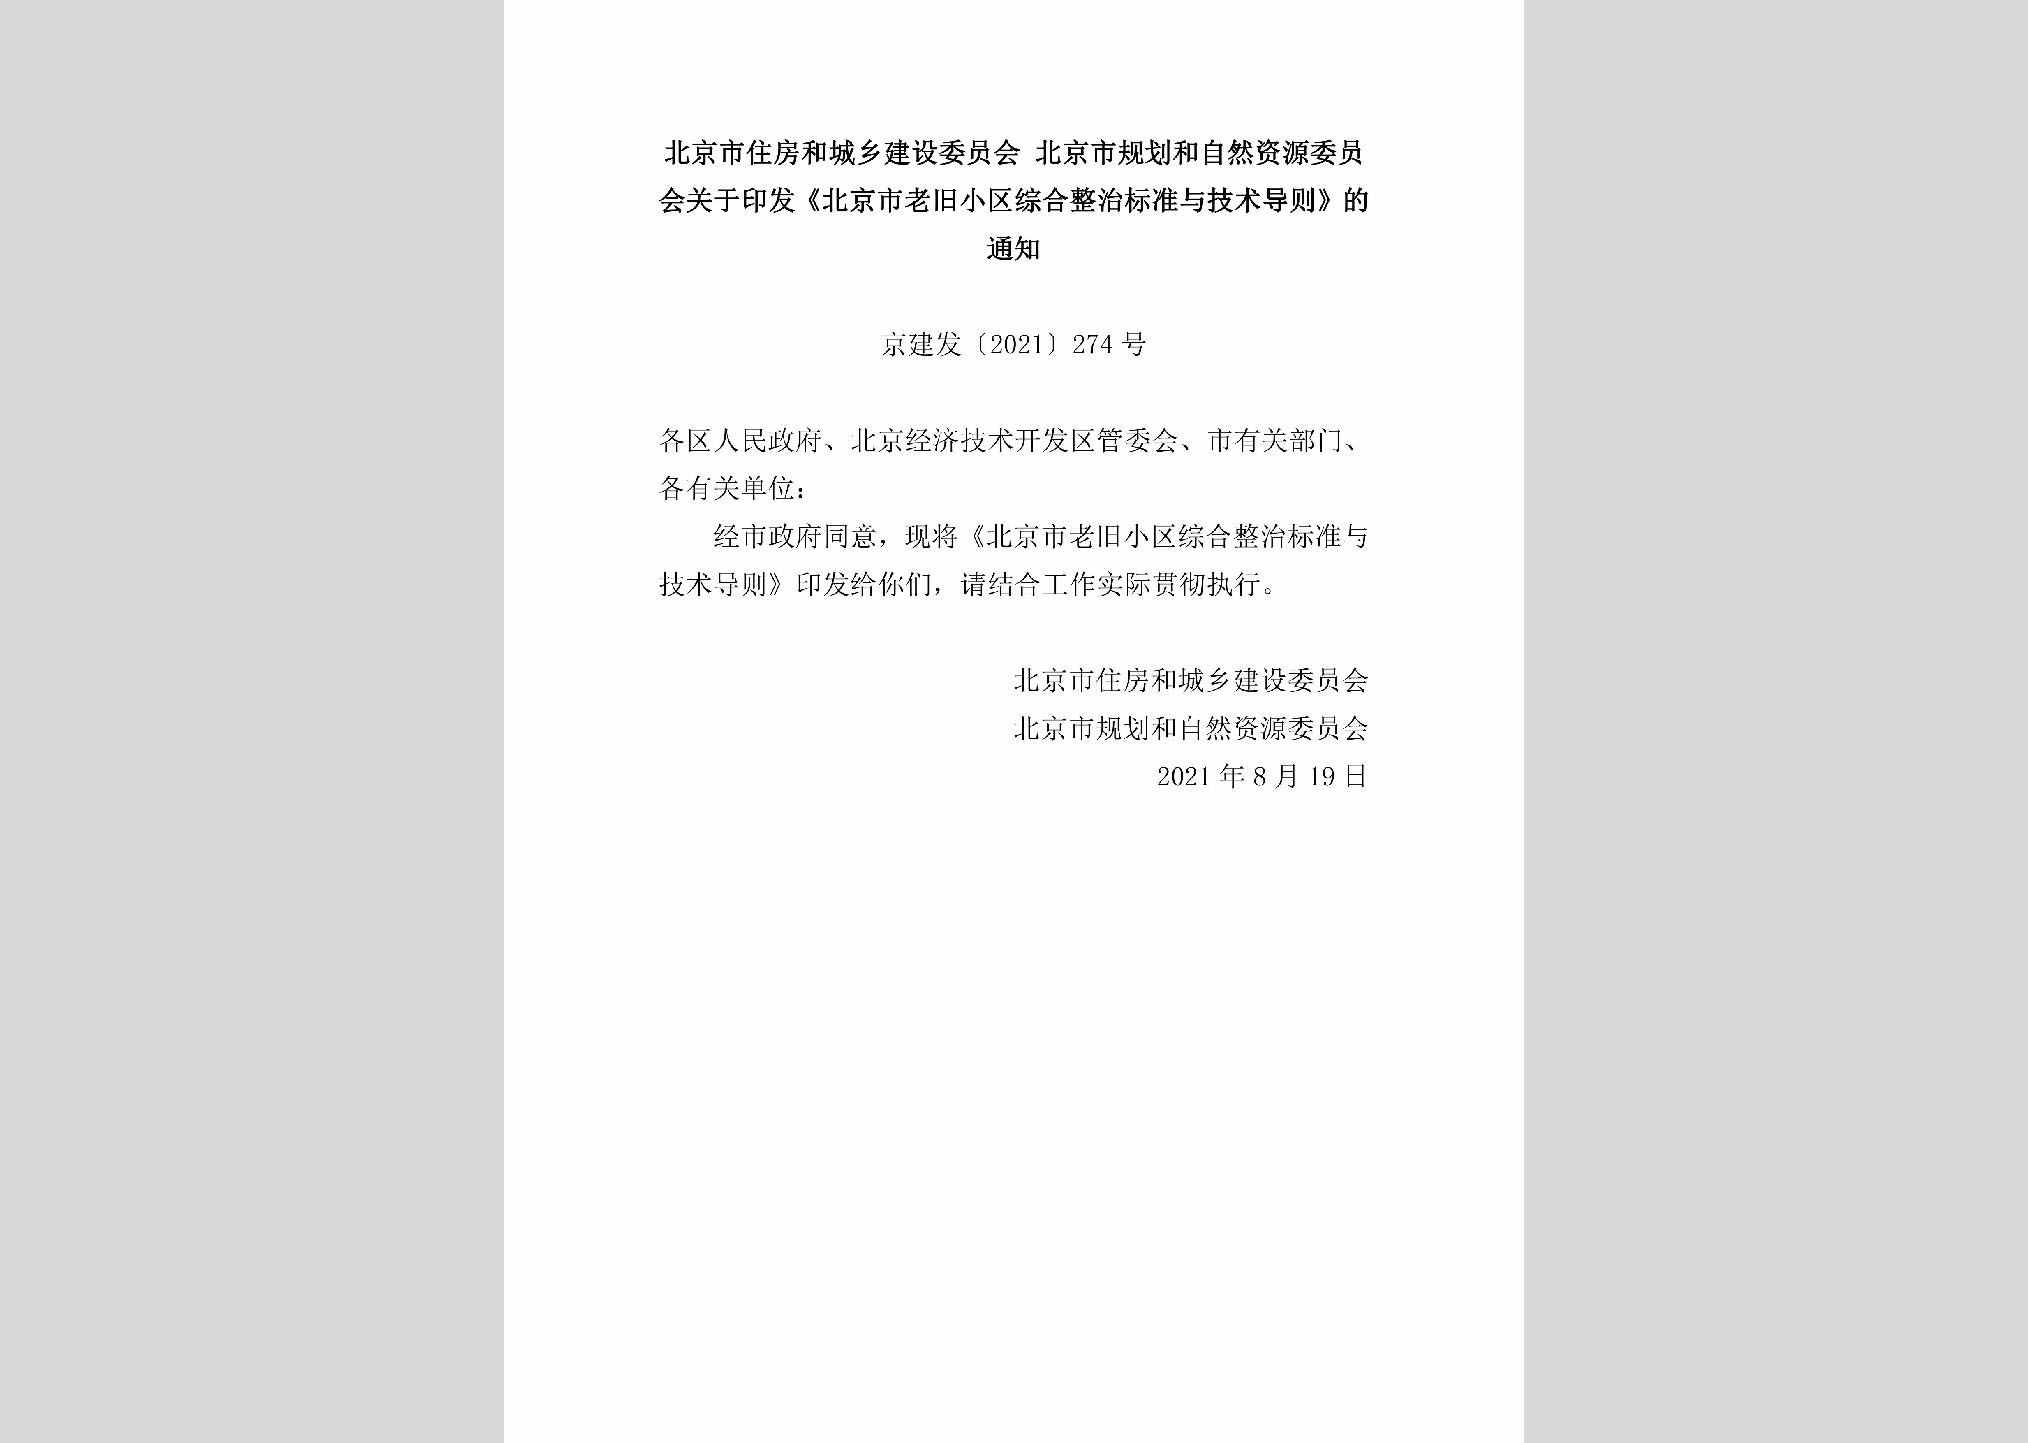 京建发[2021]274号：北京市住房和城乡建设委员会北京市规划和自然资源委员会关于印发《北京市老旧小区综合整治标准与技术导则》的通知